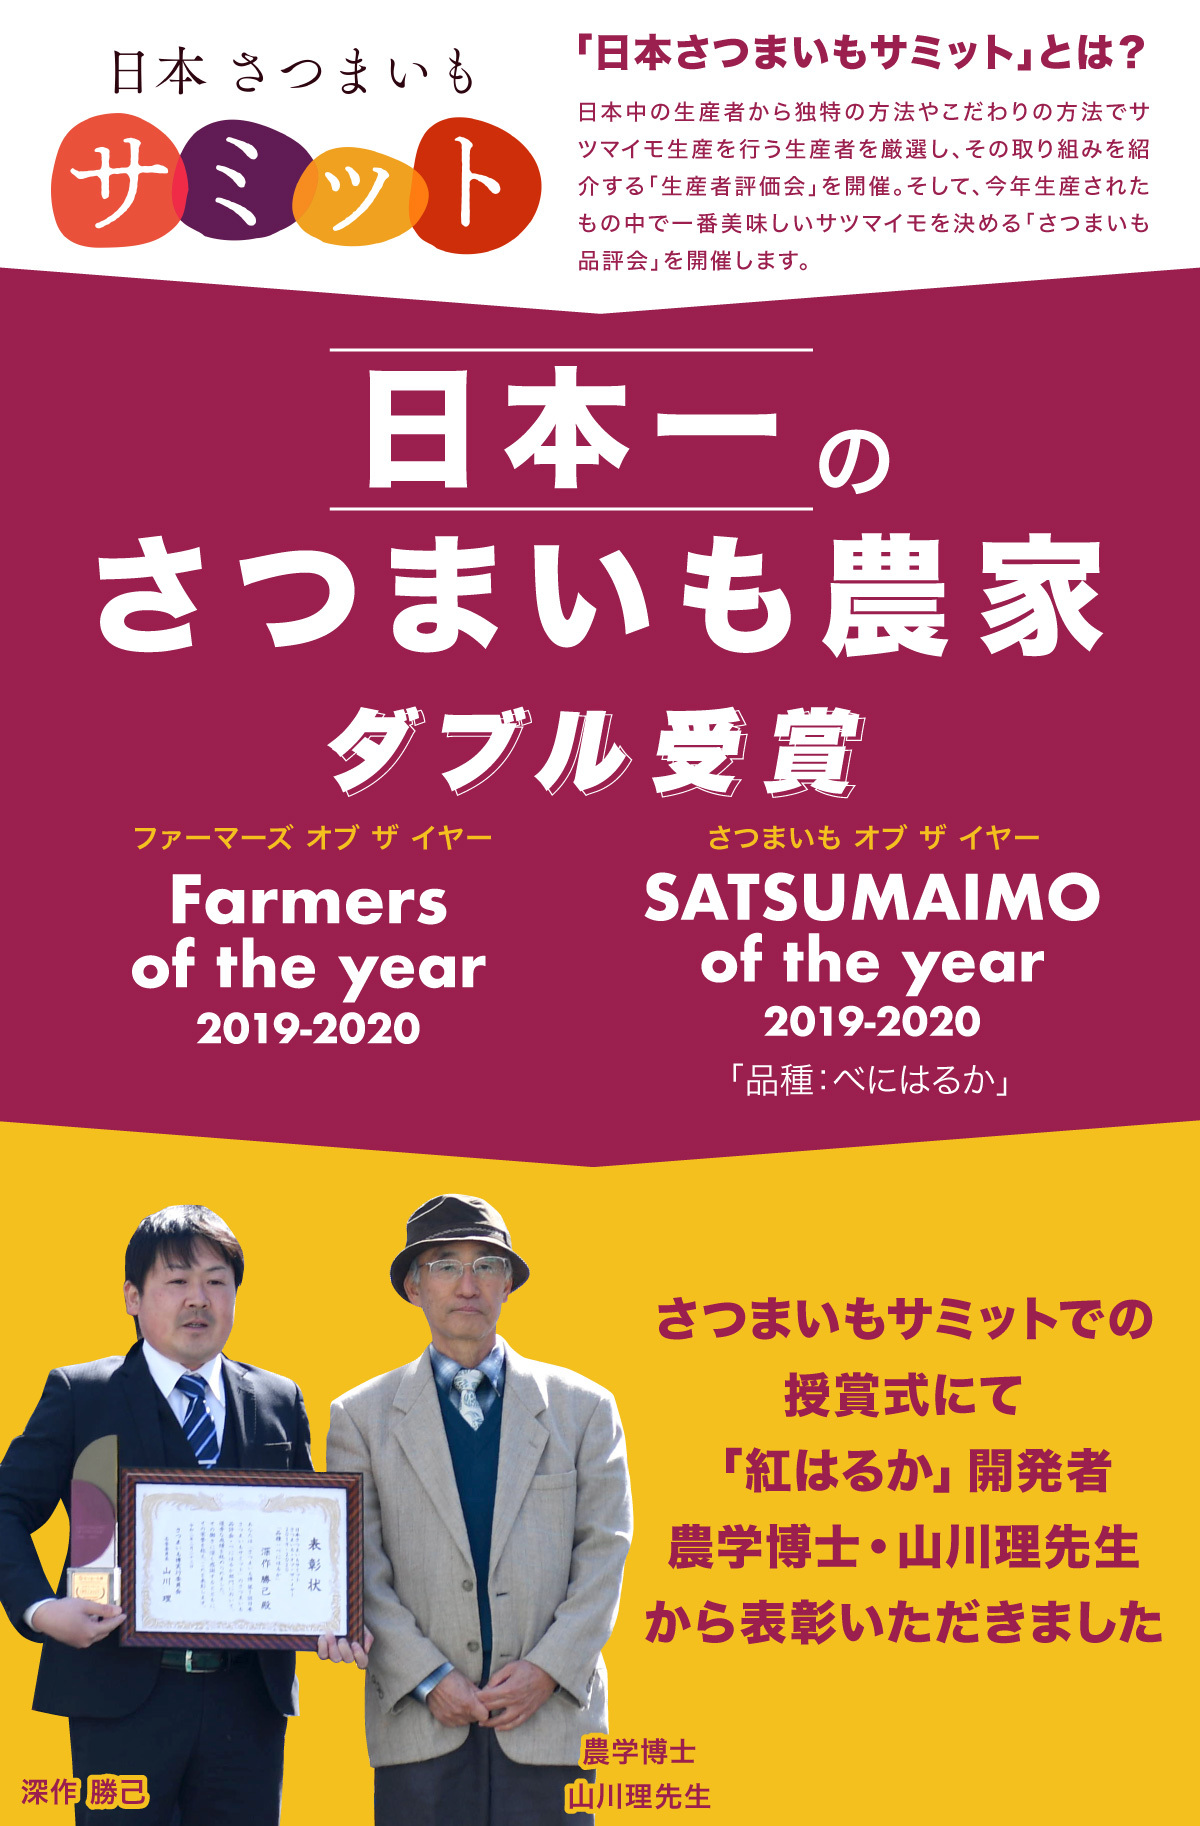 日本さつまいもサミット で農業法人深作農園が最高賞をw受賞 日本一のさつまいも農家に決定 農業法人深作農園有限会社のプレスリリース